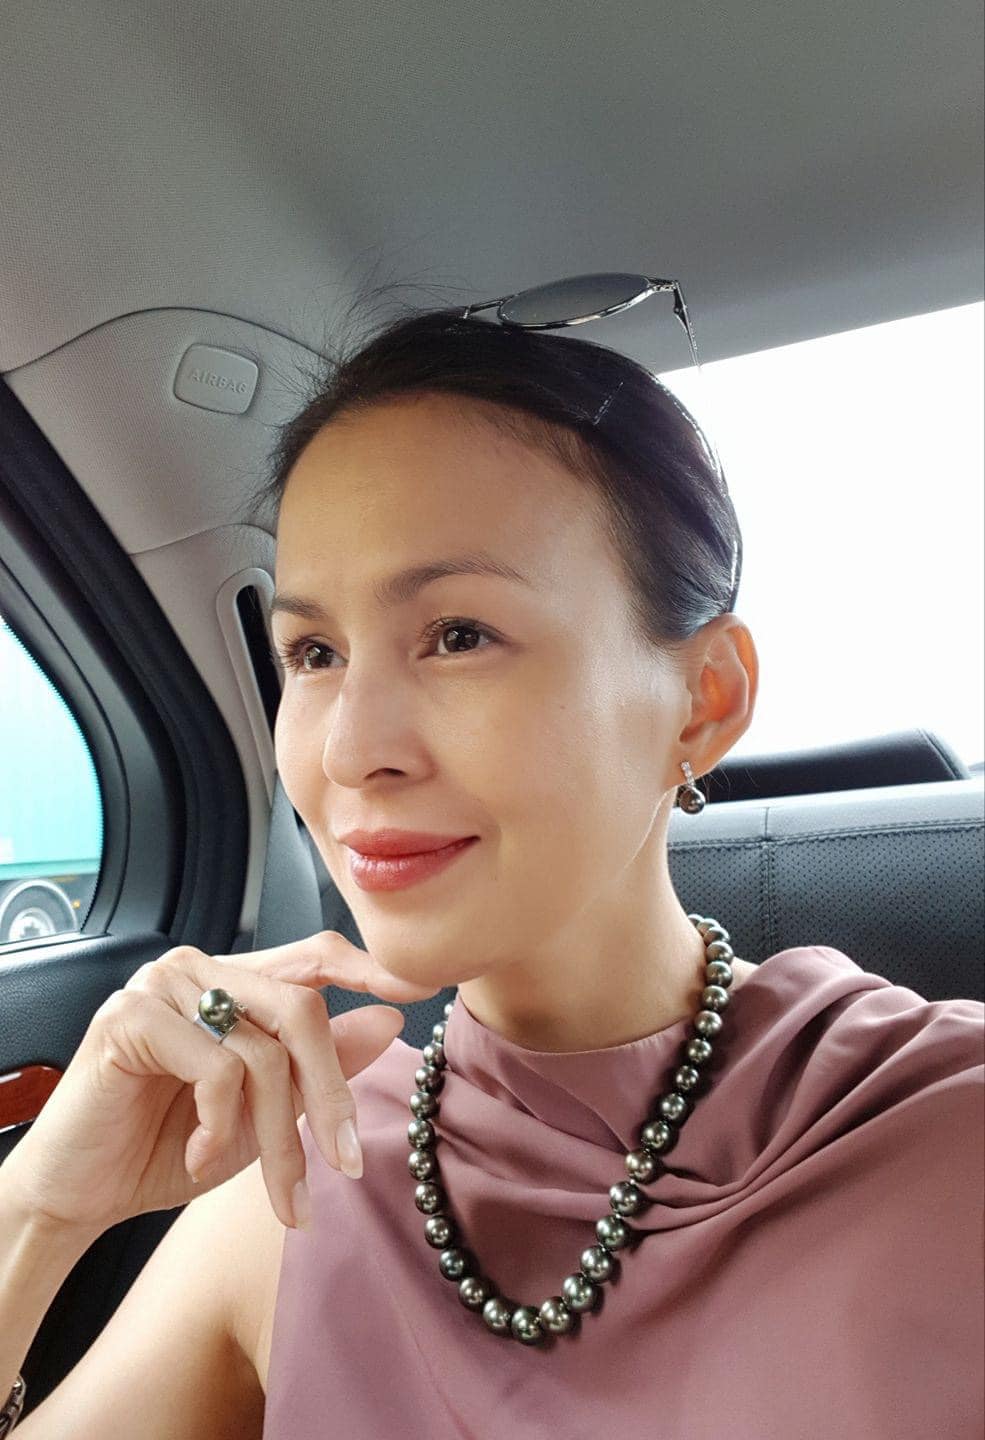 Facebooker Lương Hoàng Anh – vợ cũ Huy Khánh gây tranh cãi khi chê “gạo thị trường có thuốc” - ảnh 5